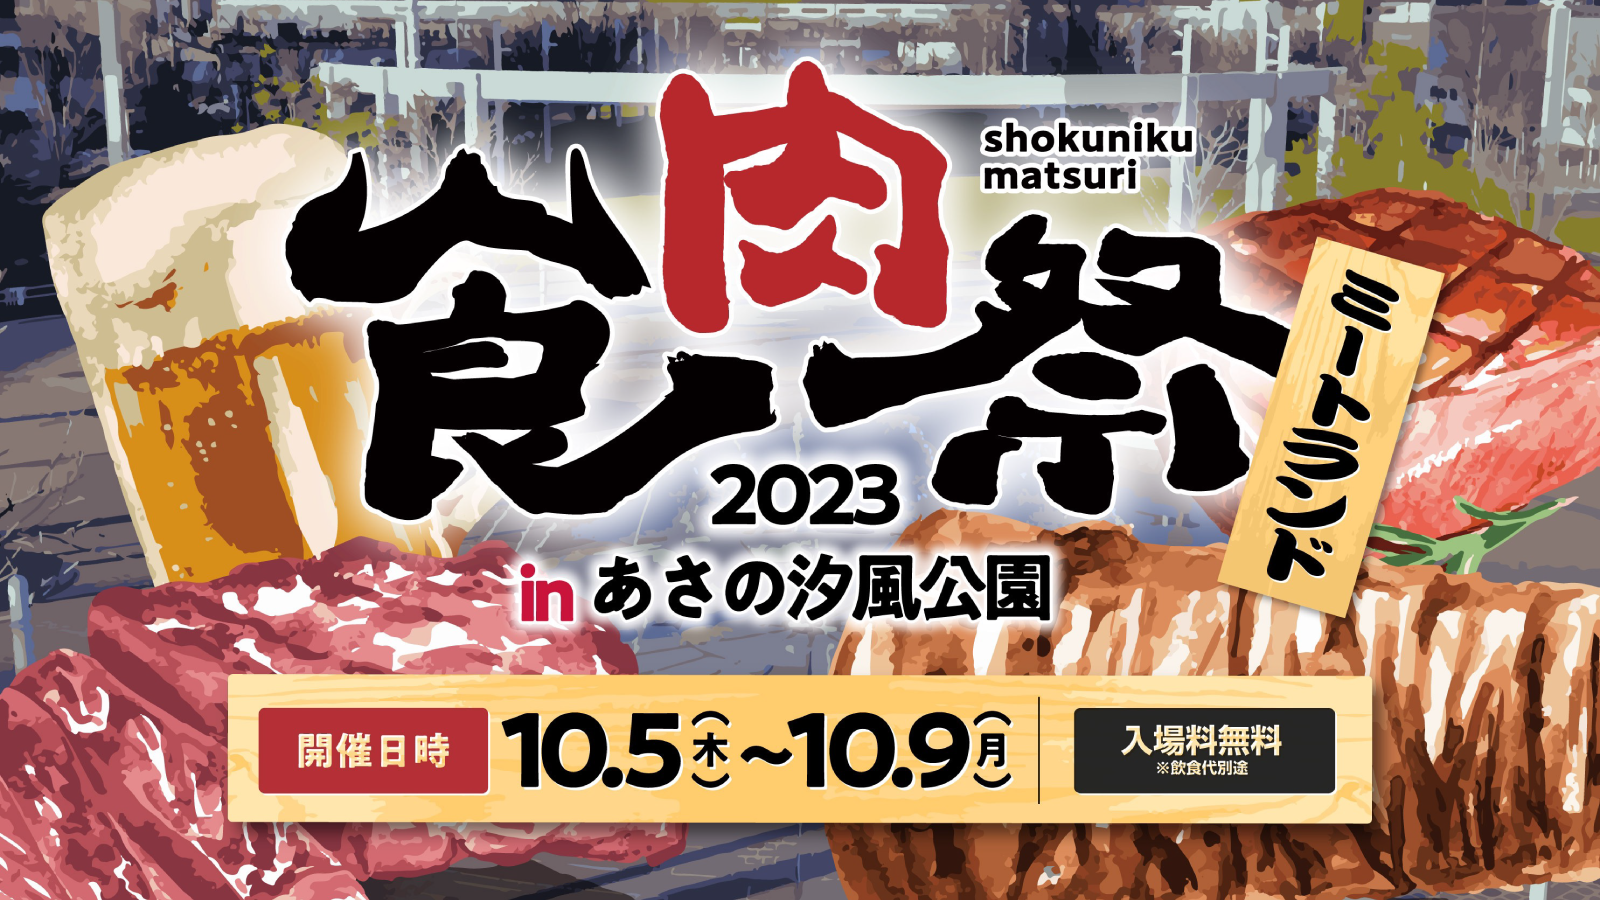 「食肉祭2023」の企画制作として参画いたします。